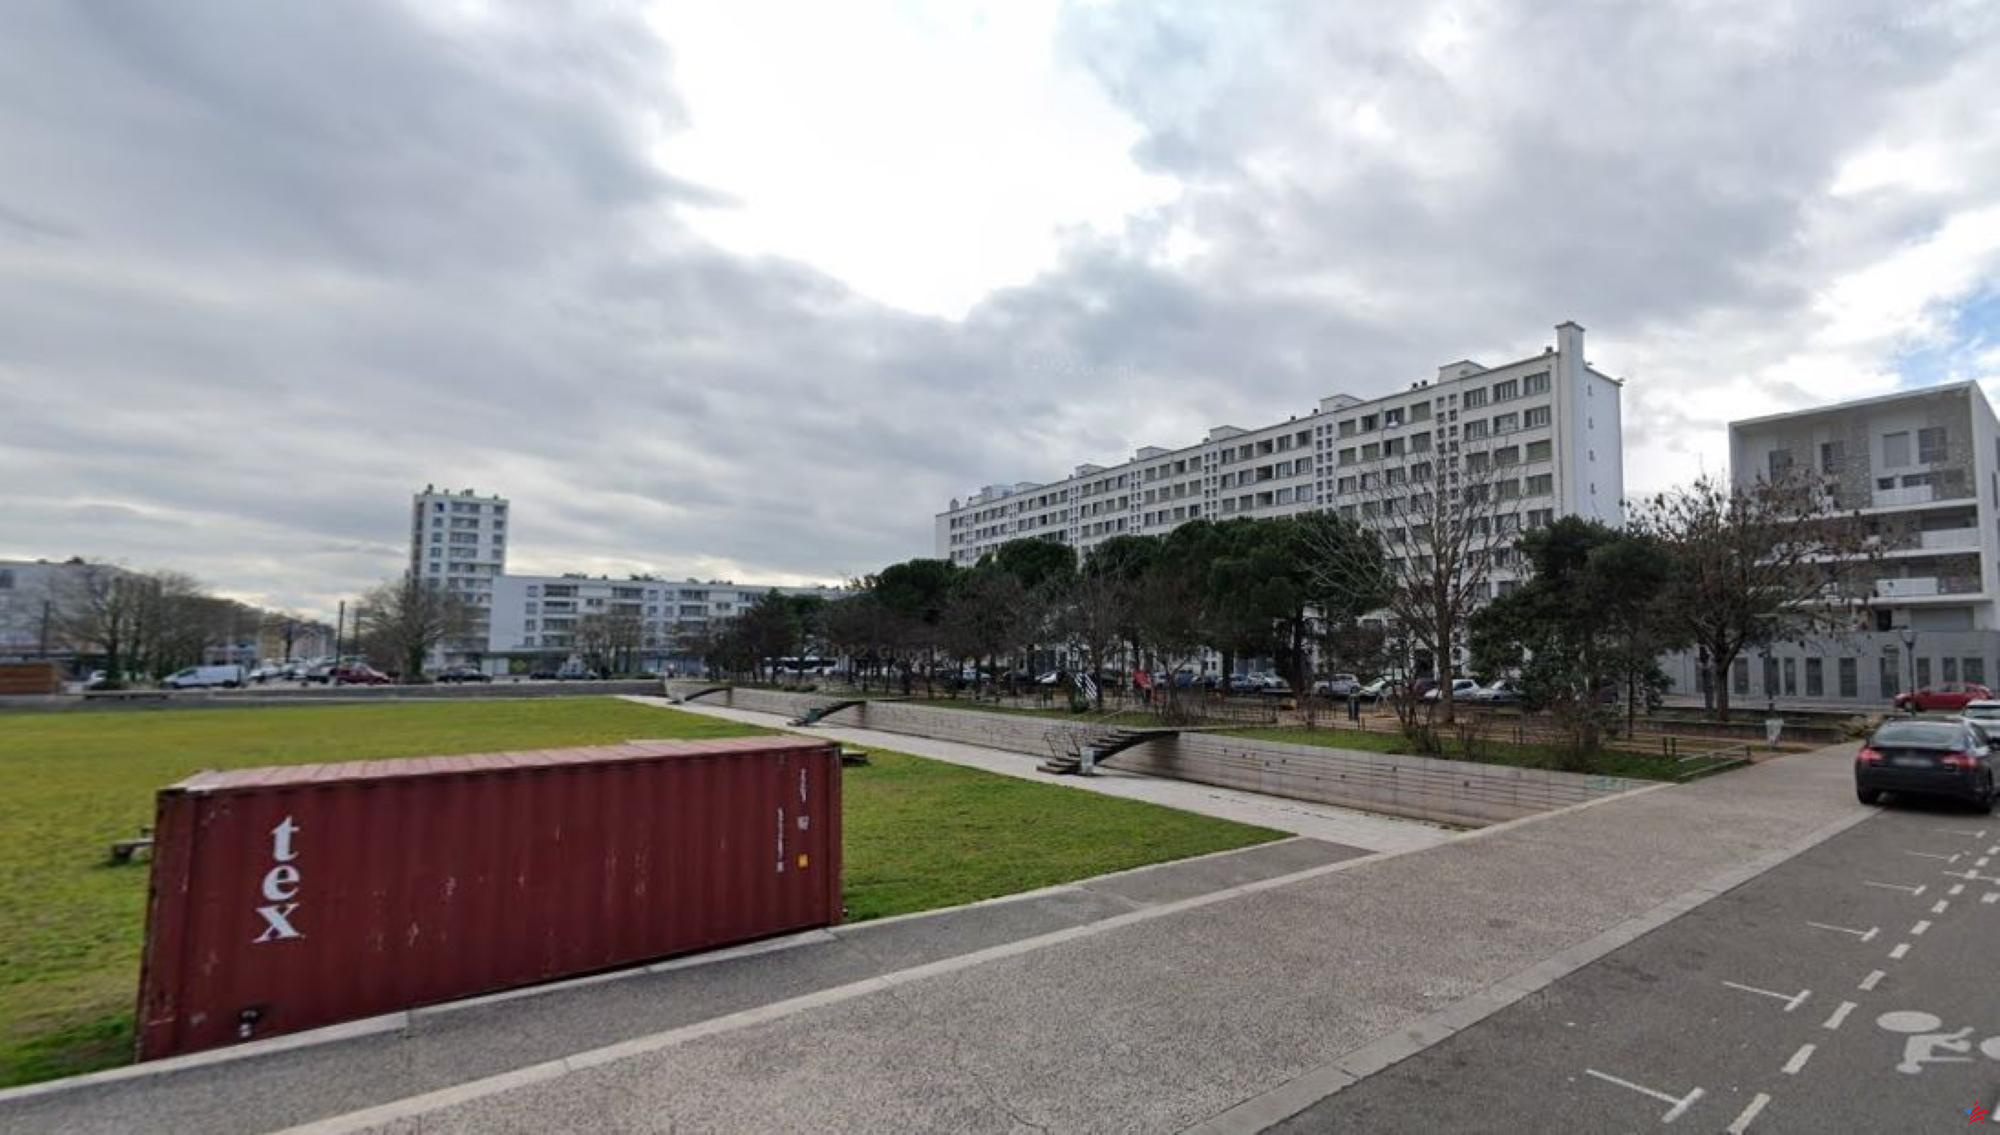 “Un centro de reciclaje al aire libre”: en Lyon, los vecinos exasperados por la expansión de un mercado incontrolado